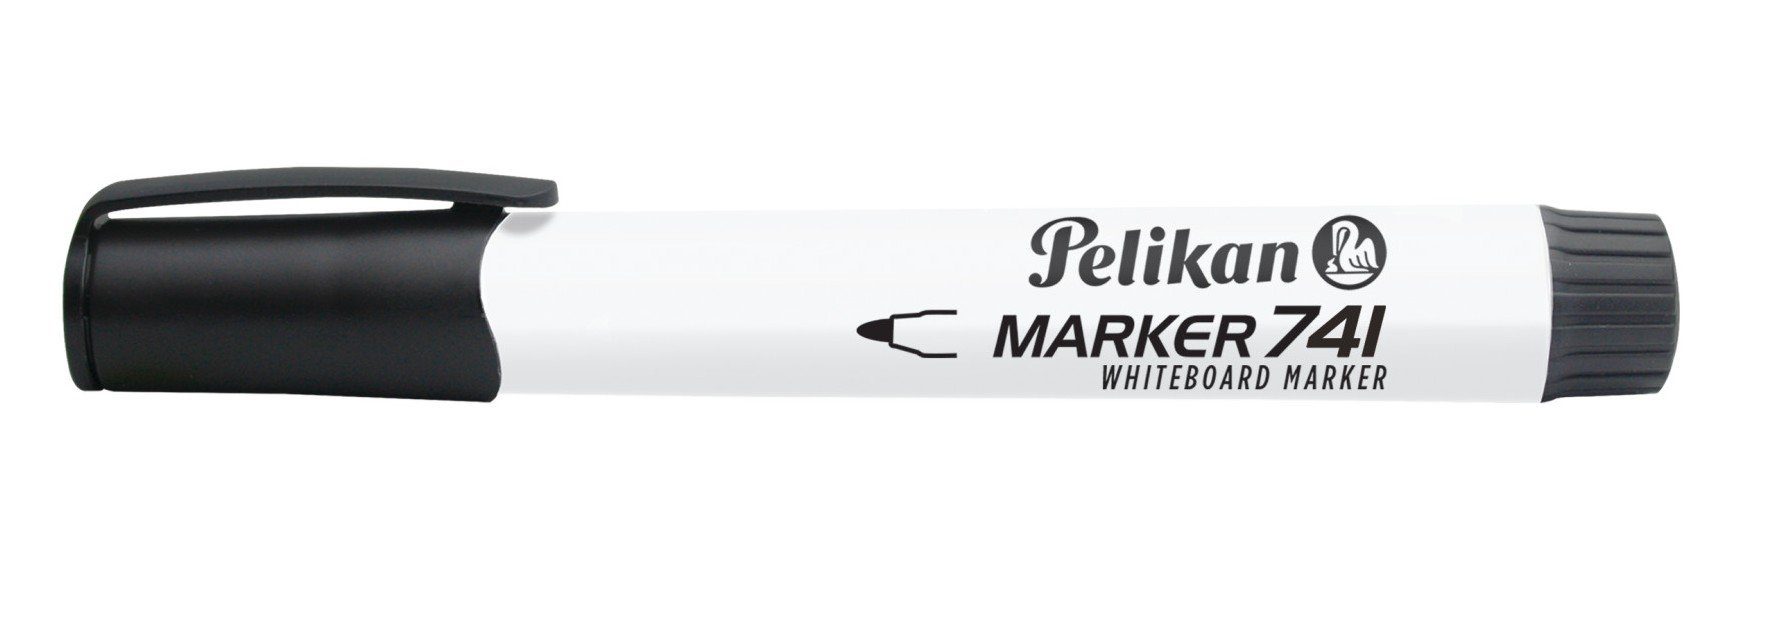 Marker schwarz Pelikan Marker Pelikan 741 Whiteboard